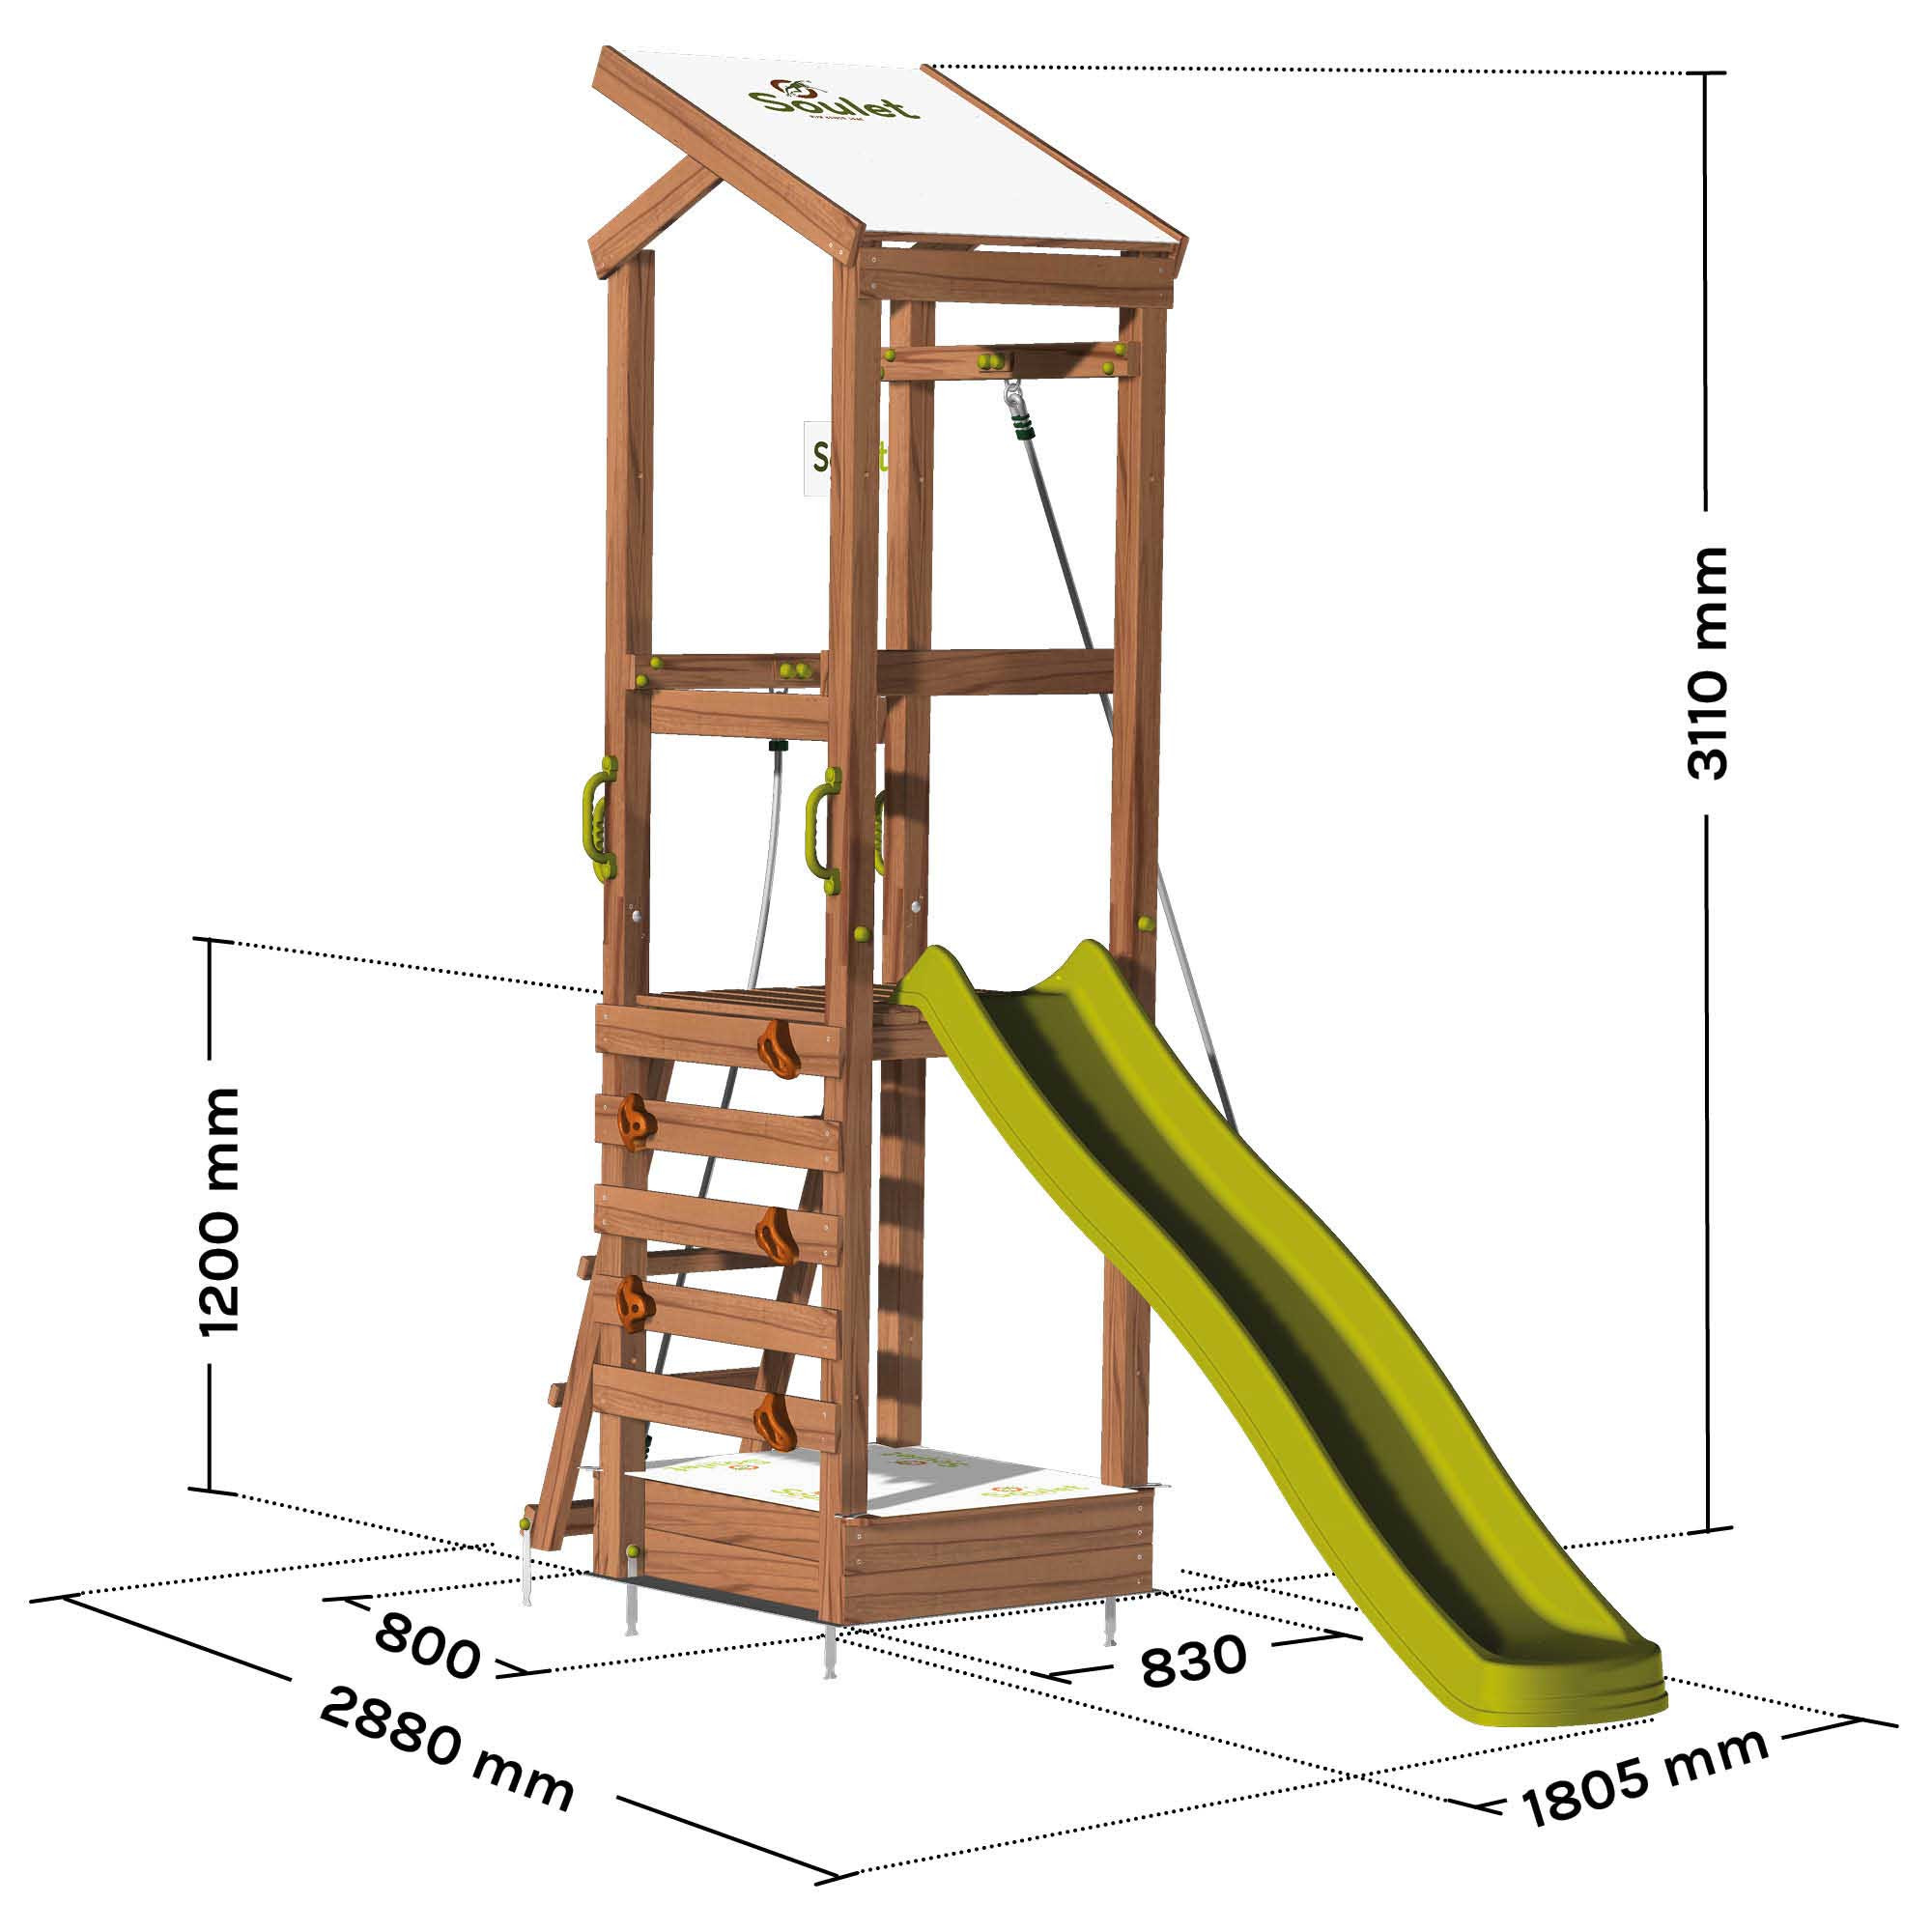 KiddyMoon aire de jeux en bois avec toboggan cadre d'escalade pour